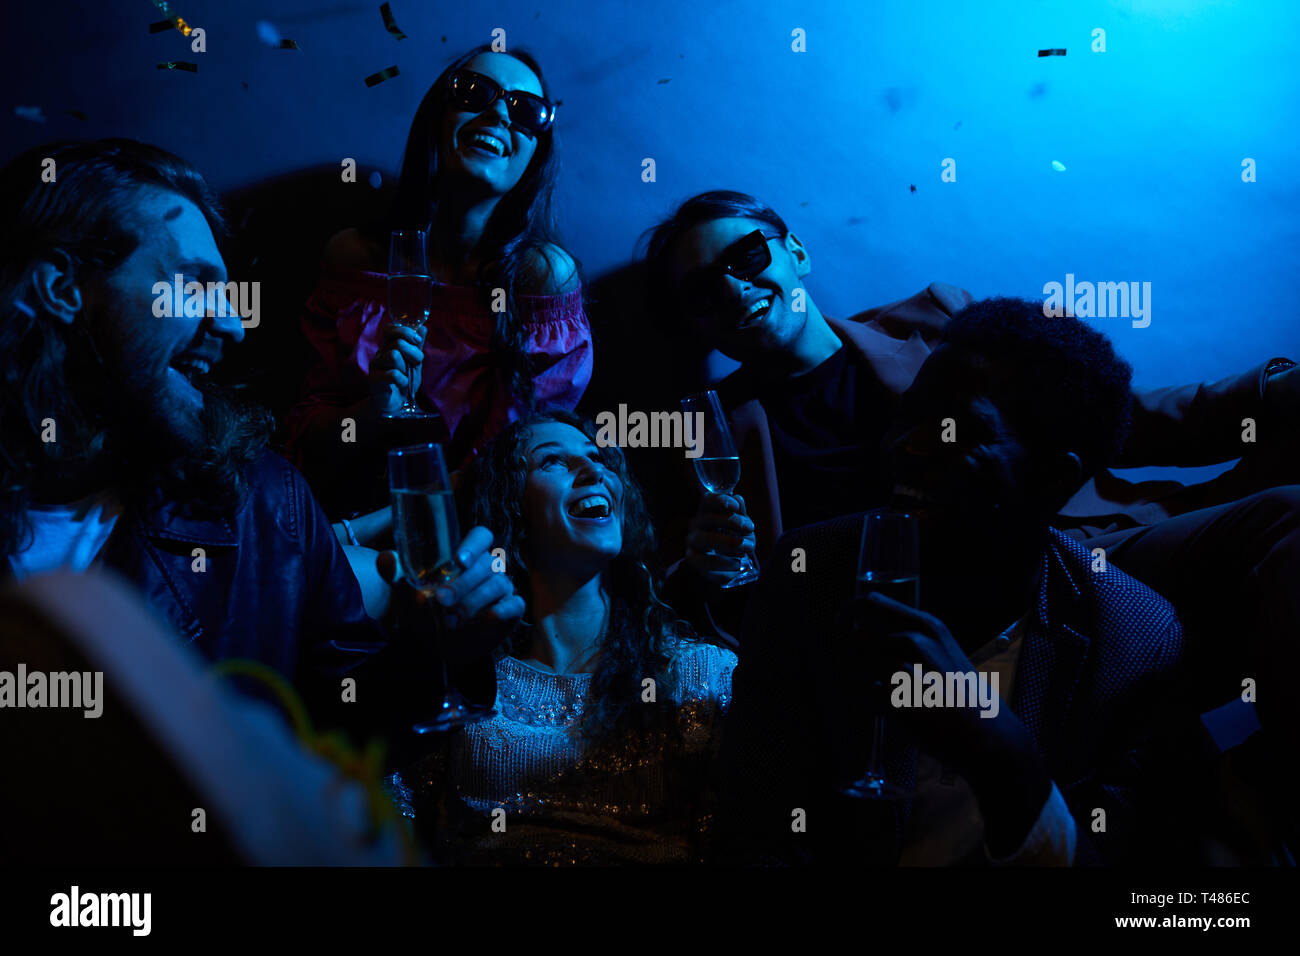 Groupe de jeunes amis positifs riant ensemble et buvant du champagne dans la chambre sombre avec lumière bleue, fille excitée de tomber confetti Banque D'Images